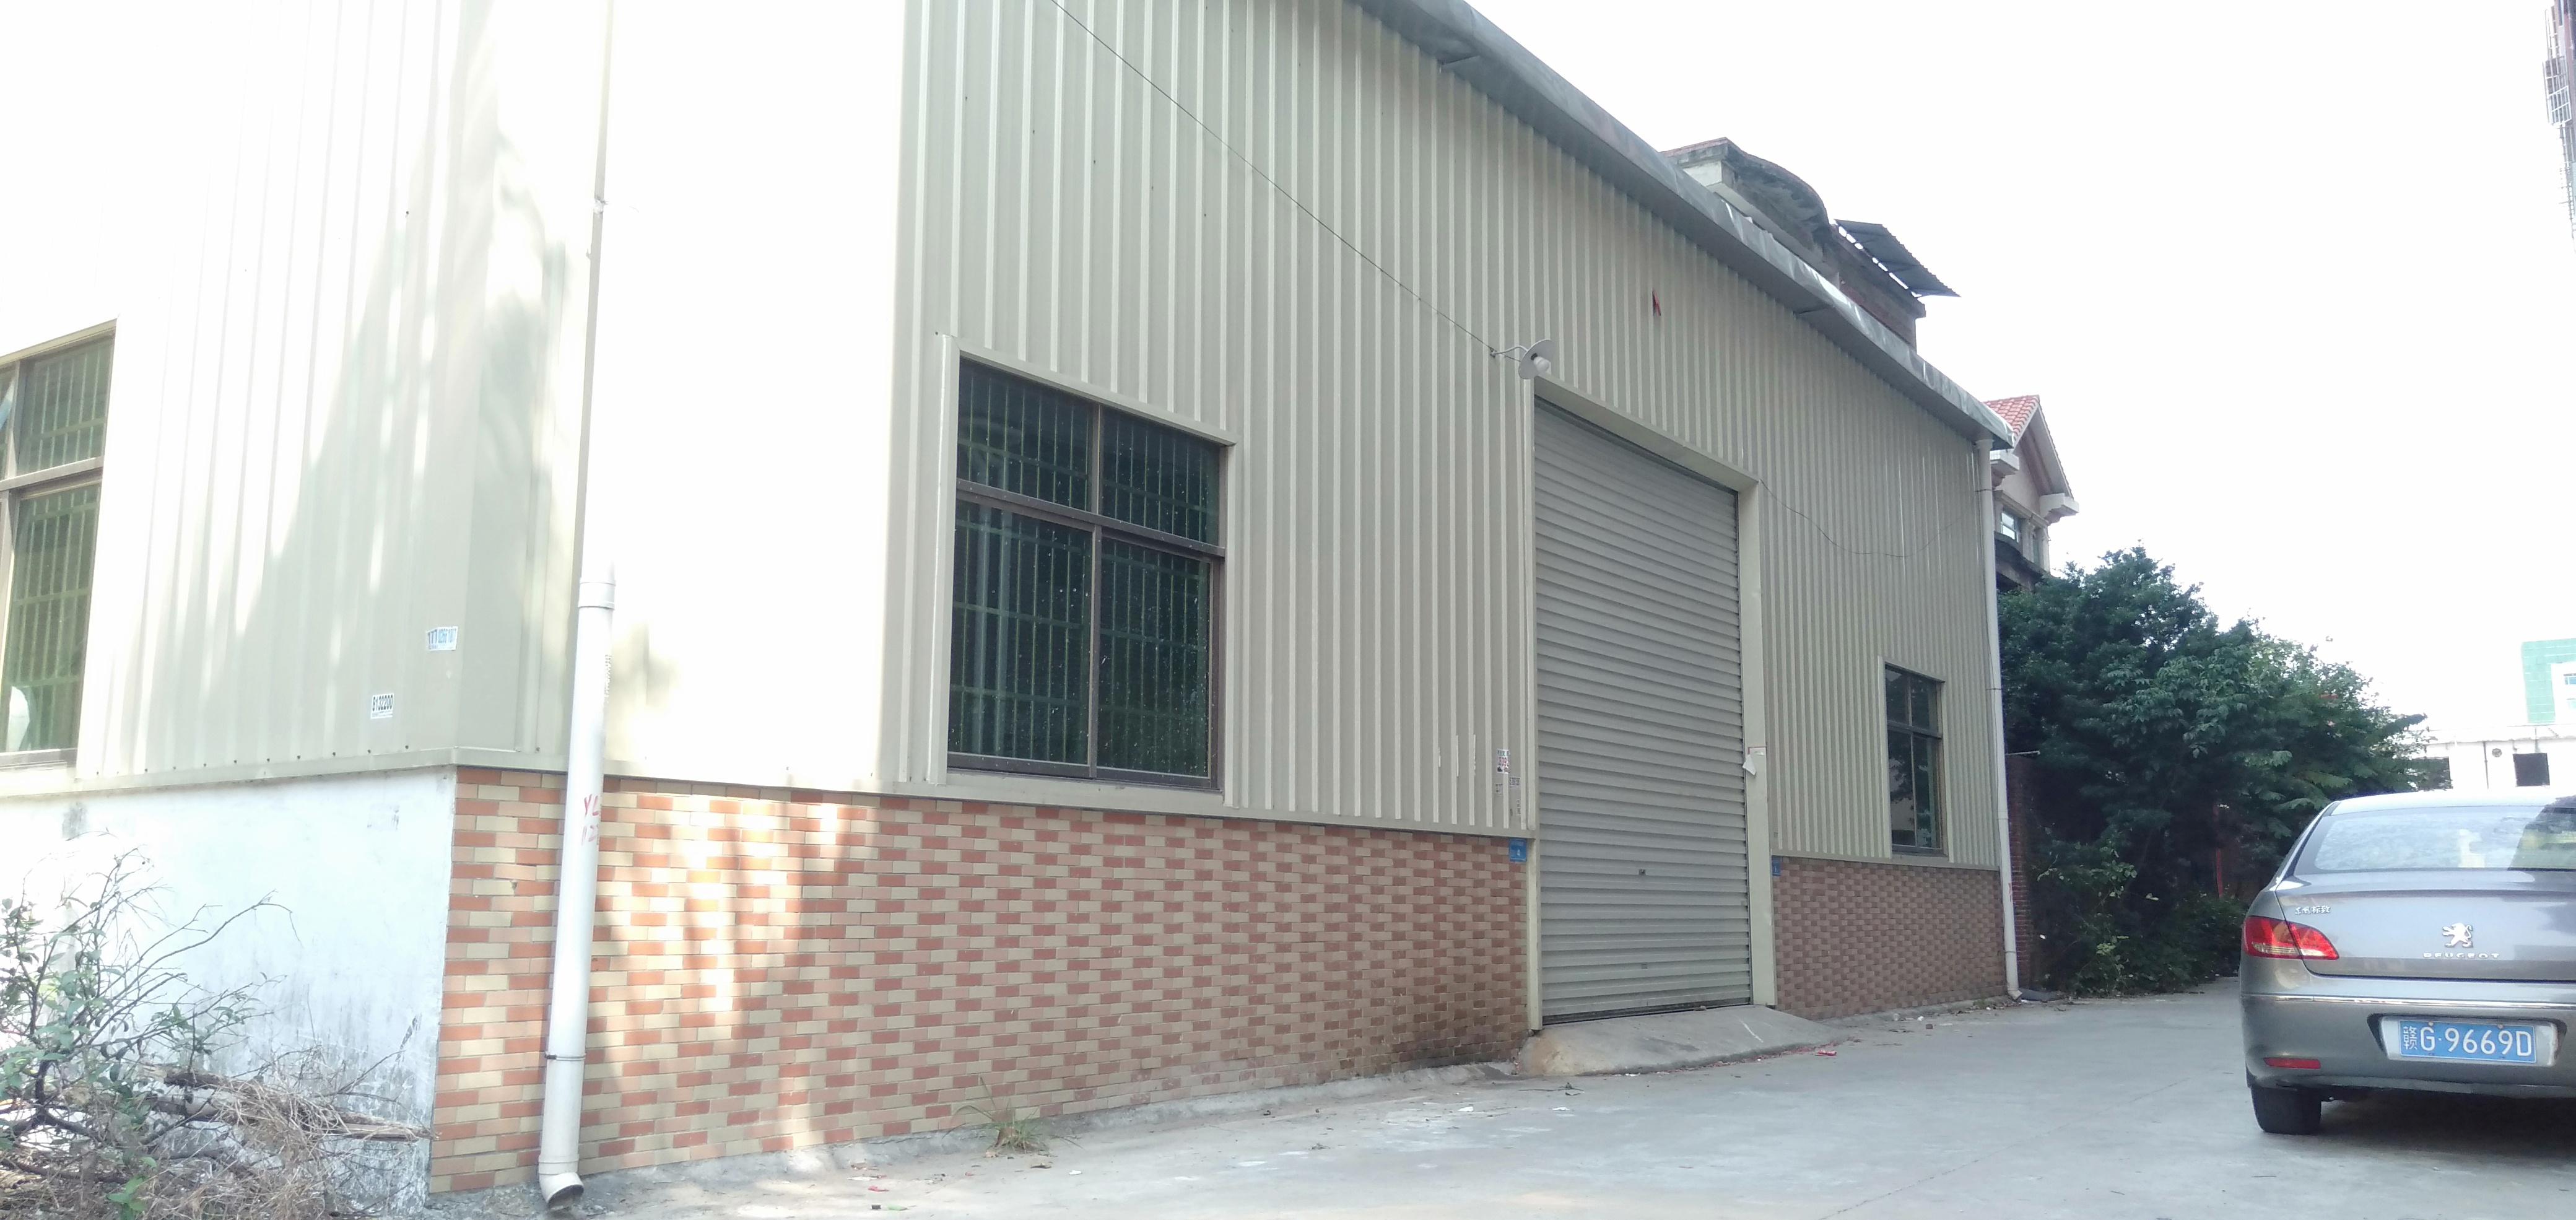 石排镇原房东单一层钢构厂房400平方带现成办公室可做加工仓库